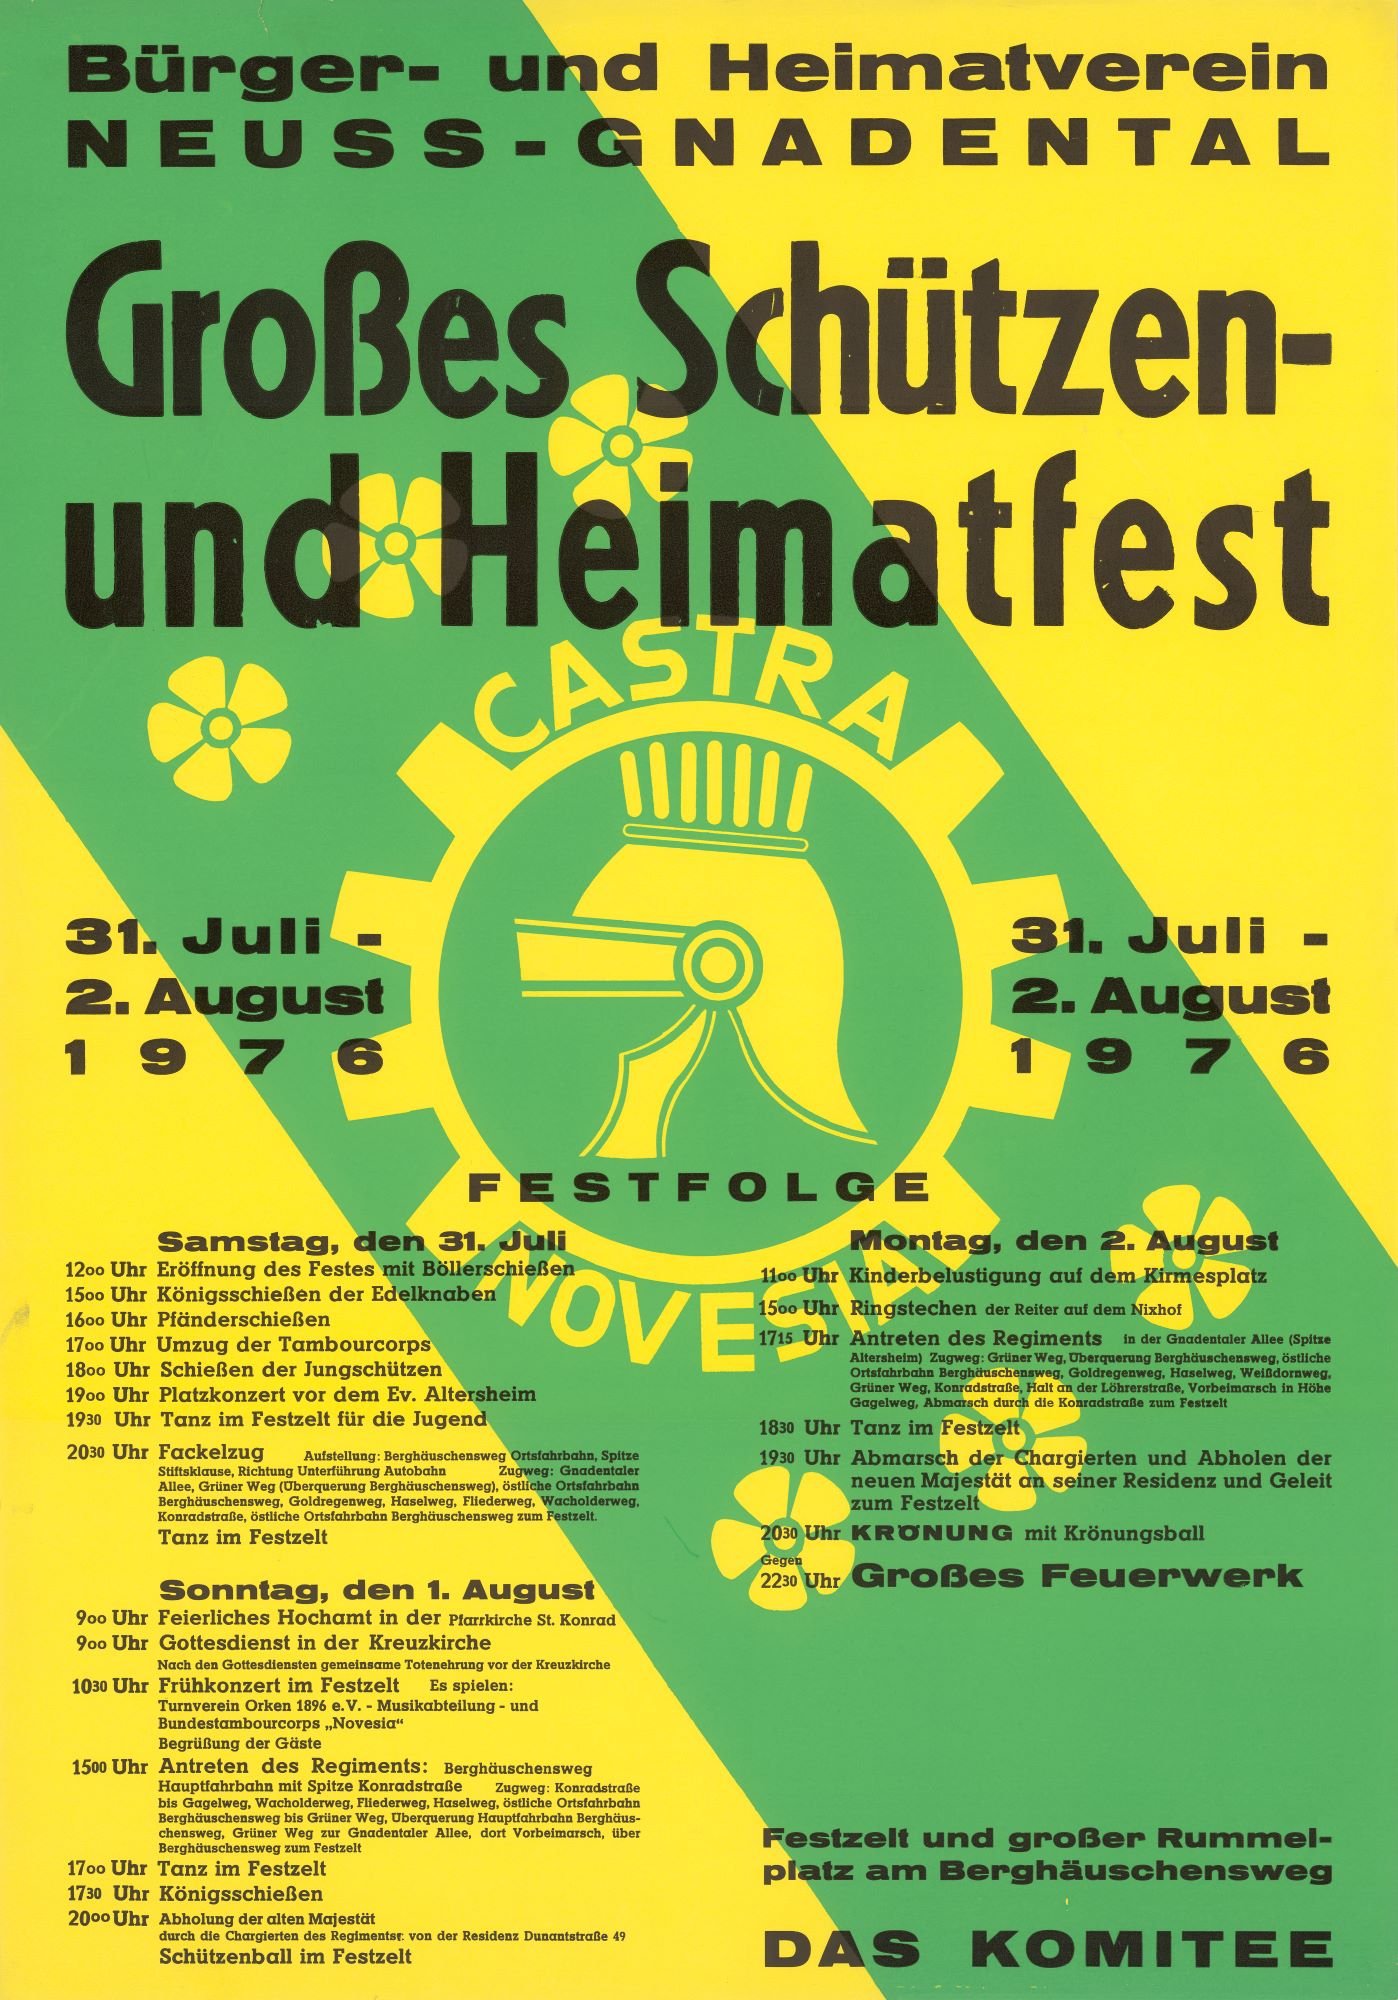 Festplakat Schützenfest Neuss-Gnadental 1976 (Rheinisches Schützenmuseum Neuss CC BY-NC-SA)